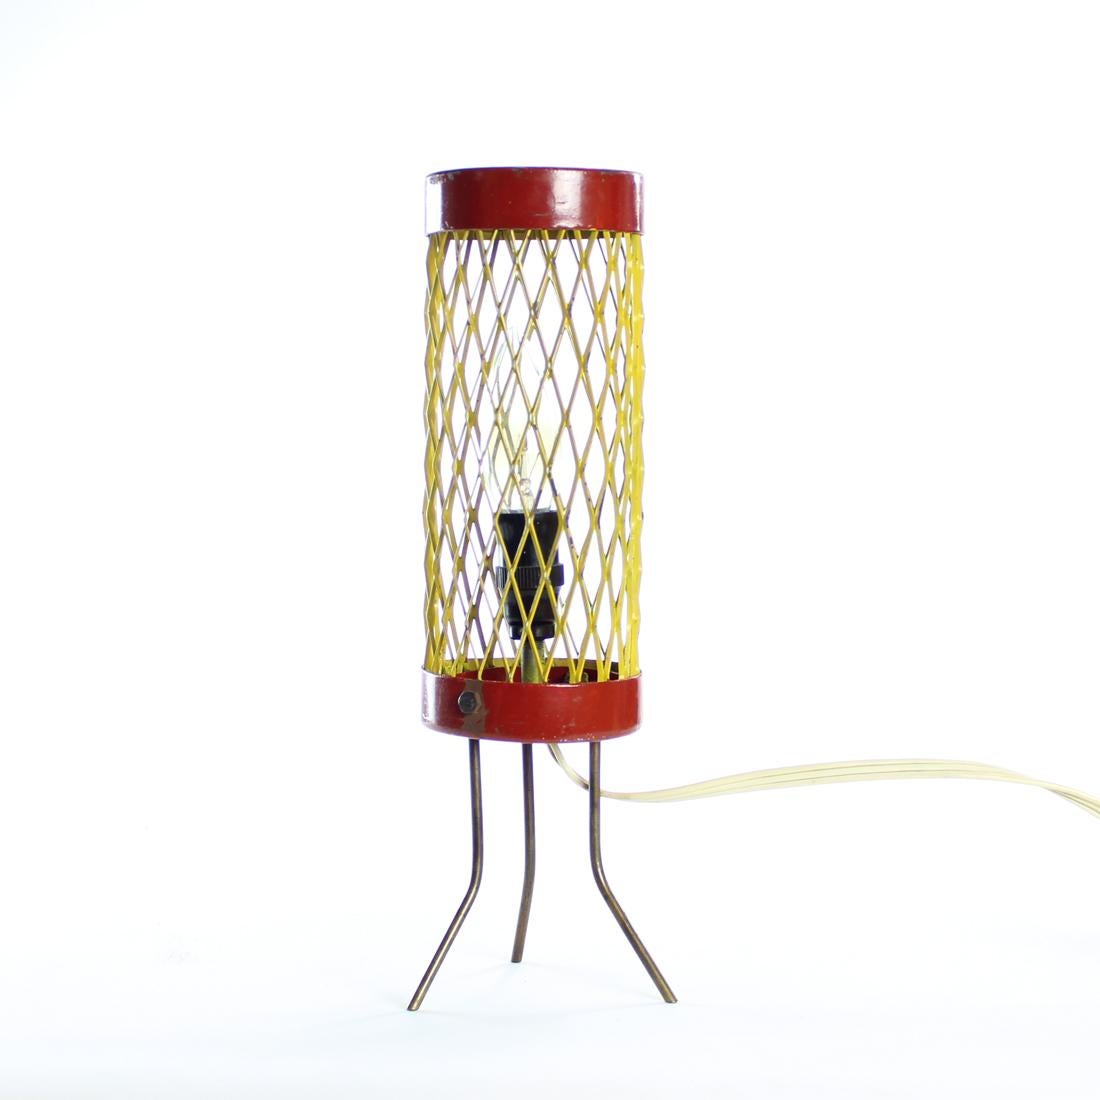 Rare lampe de table produite en Tchécoslovaquie dans les années 1950. La lampe repose sur trois élégants pieds en métal. Le bouclier est constitué d'une solide masse d'acier de couleur jaune. Les anneaux supérieur et inférieur qui retiennent le moût